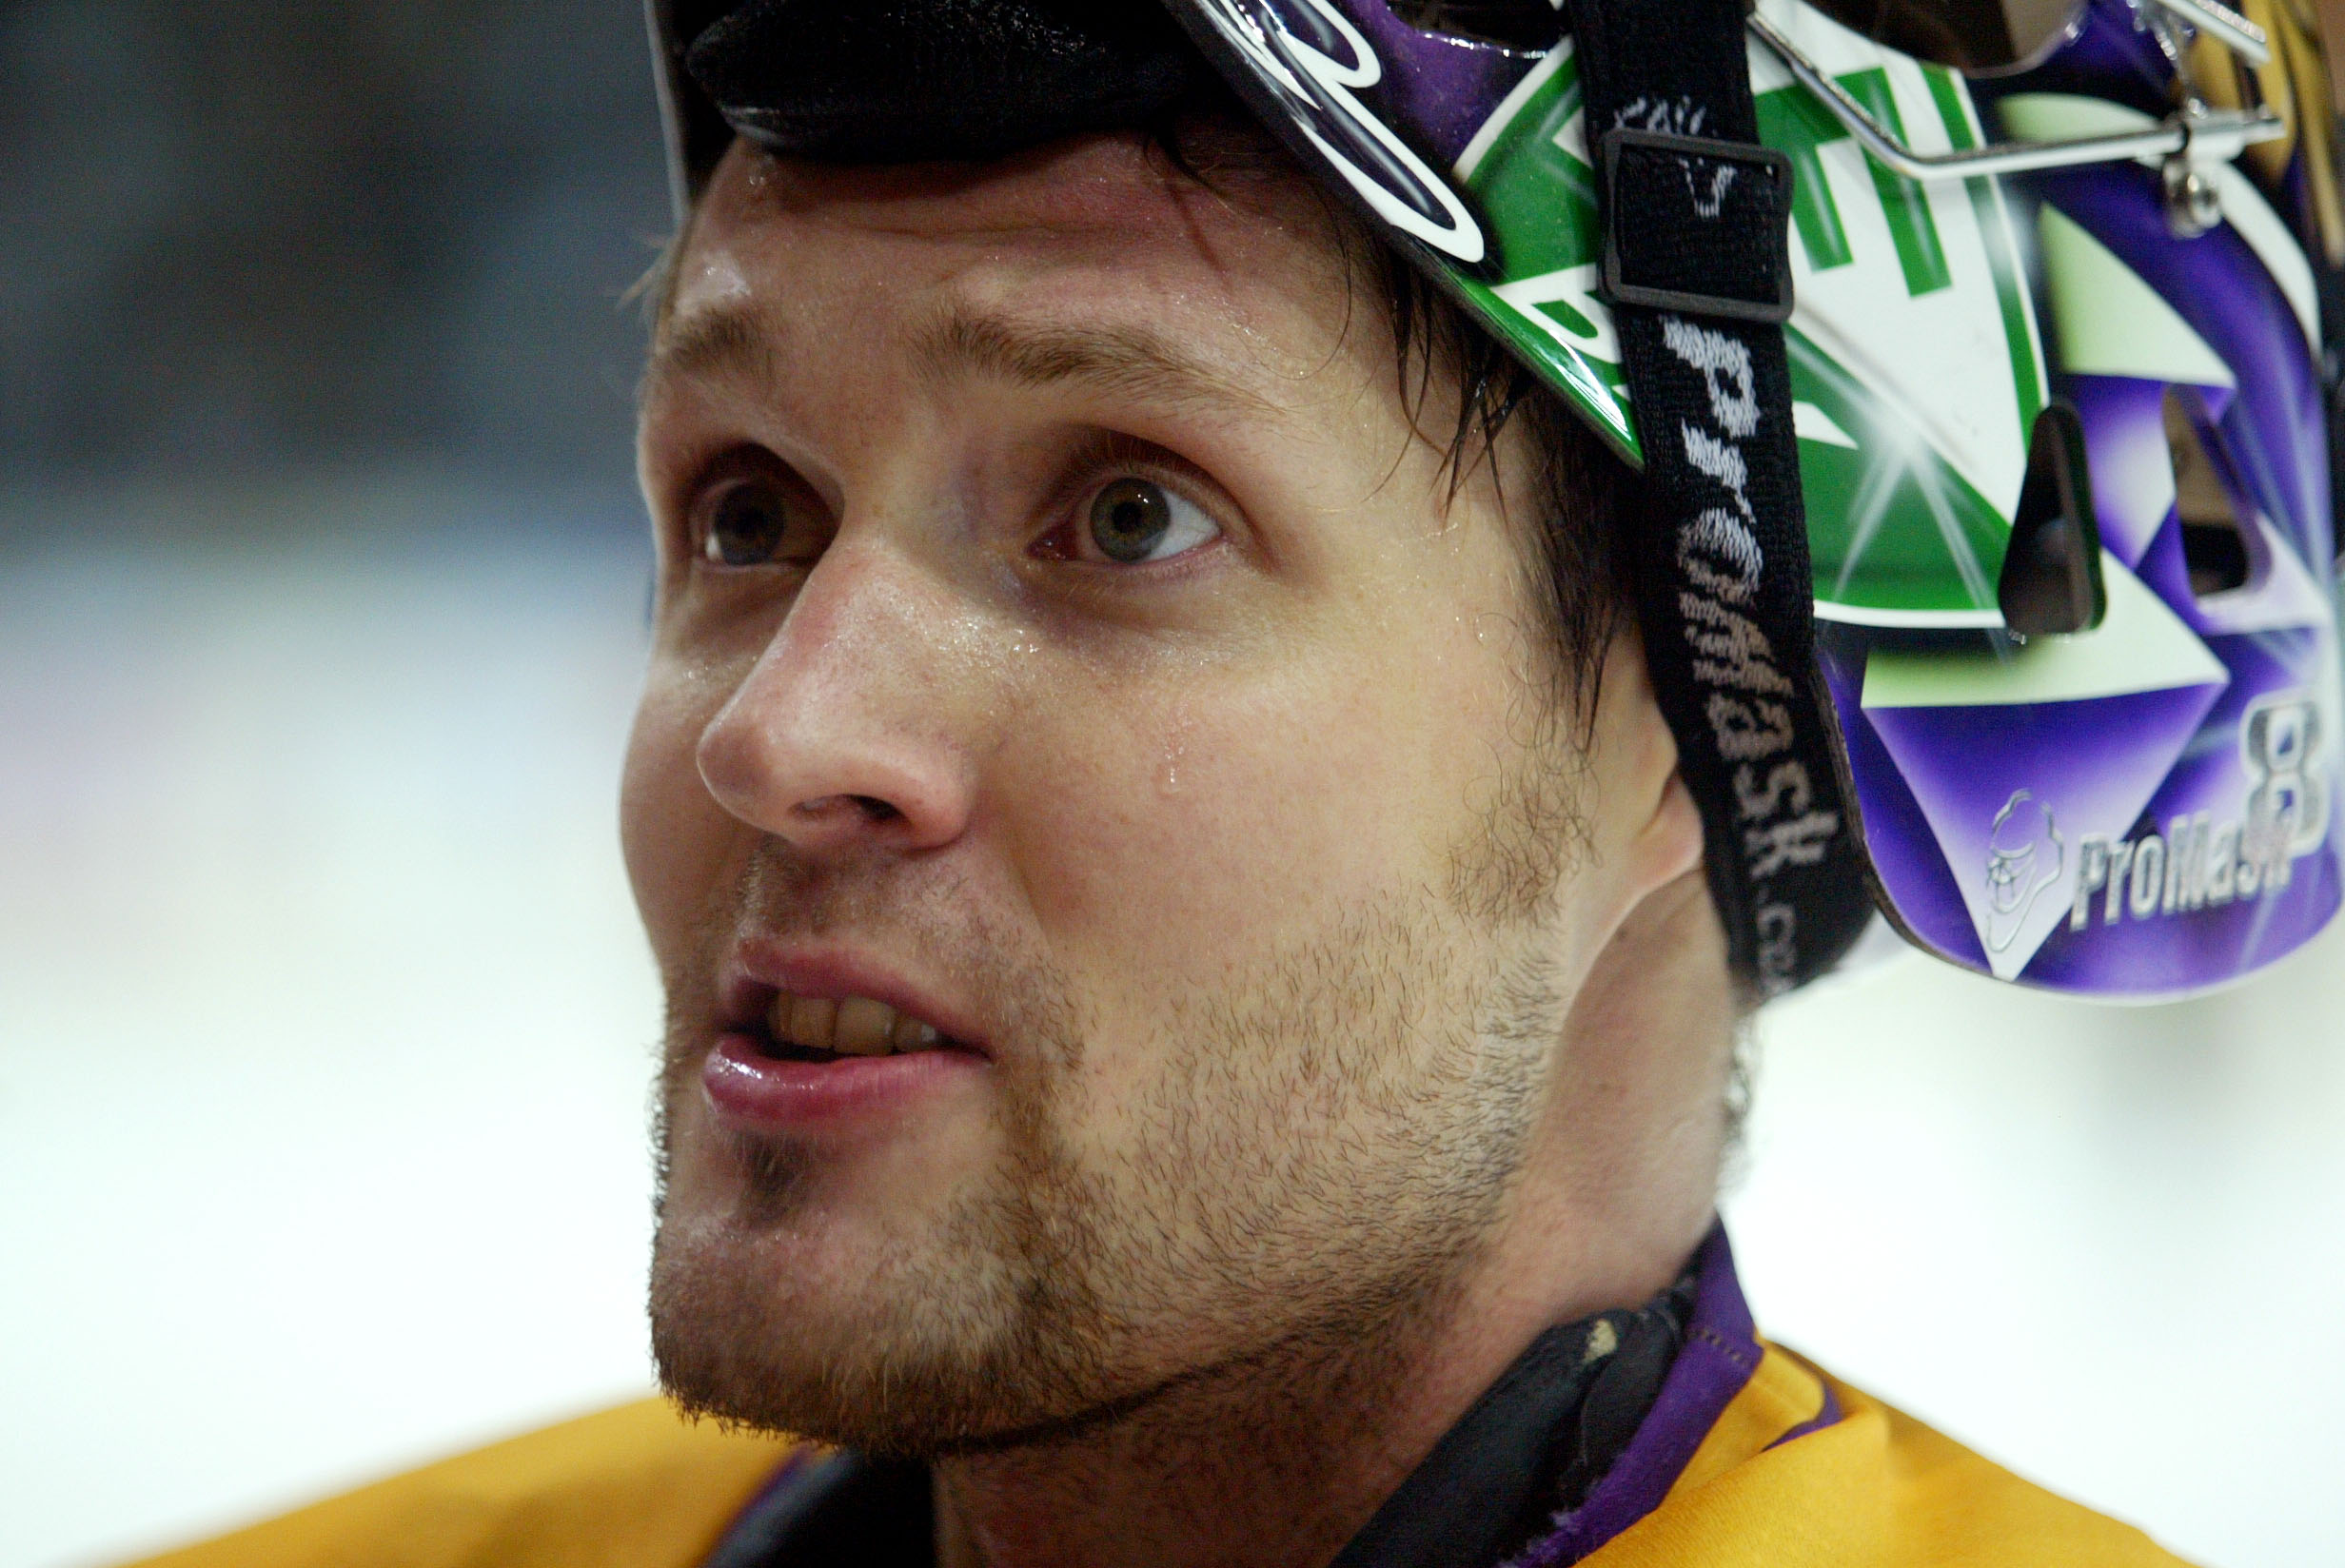 Sinuhe Wallinheimo har uttalat sig kritiskt mot att hockeyspelare kommer ut som homosexuella.